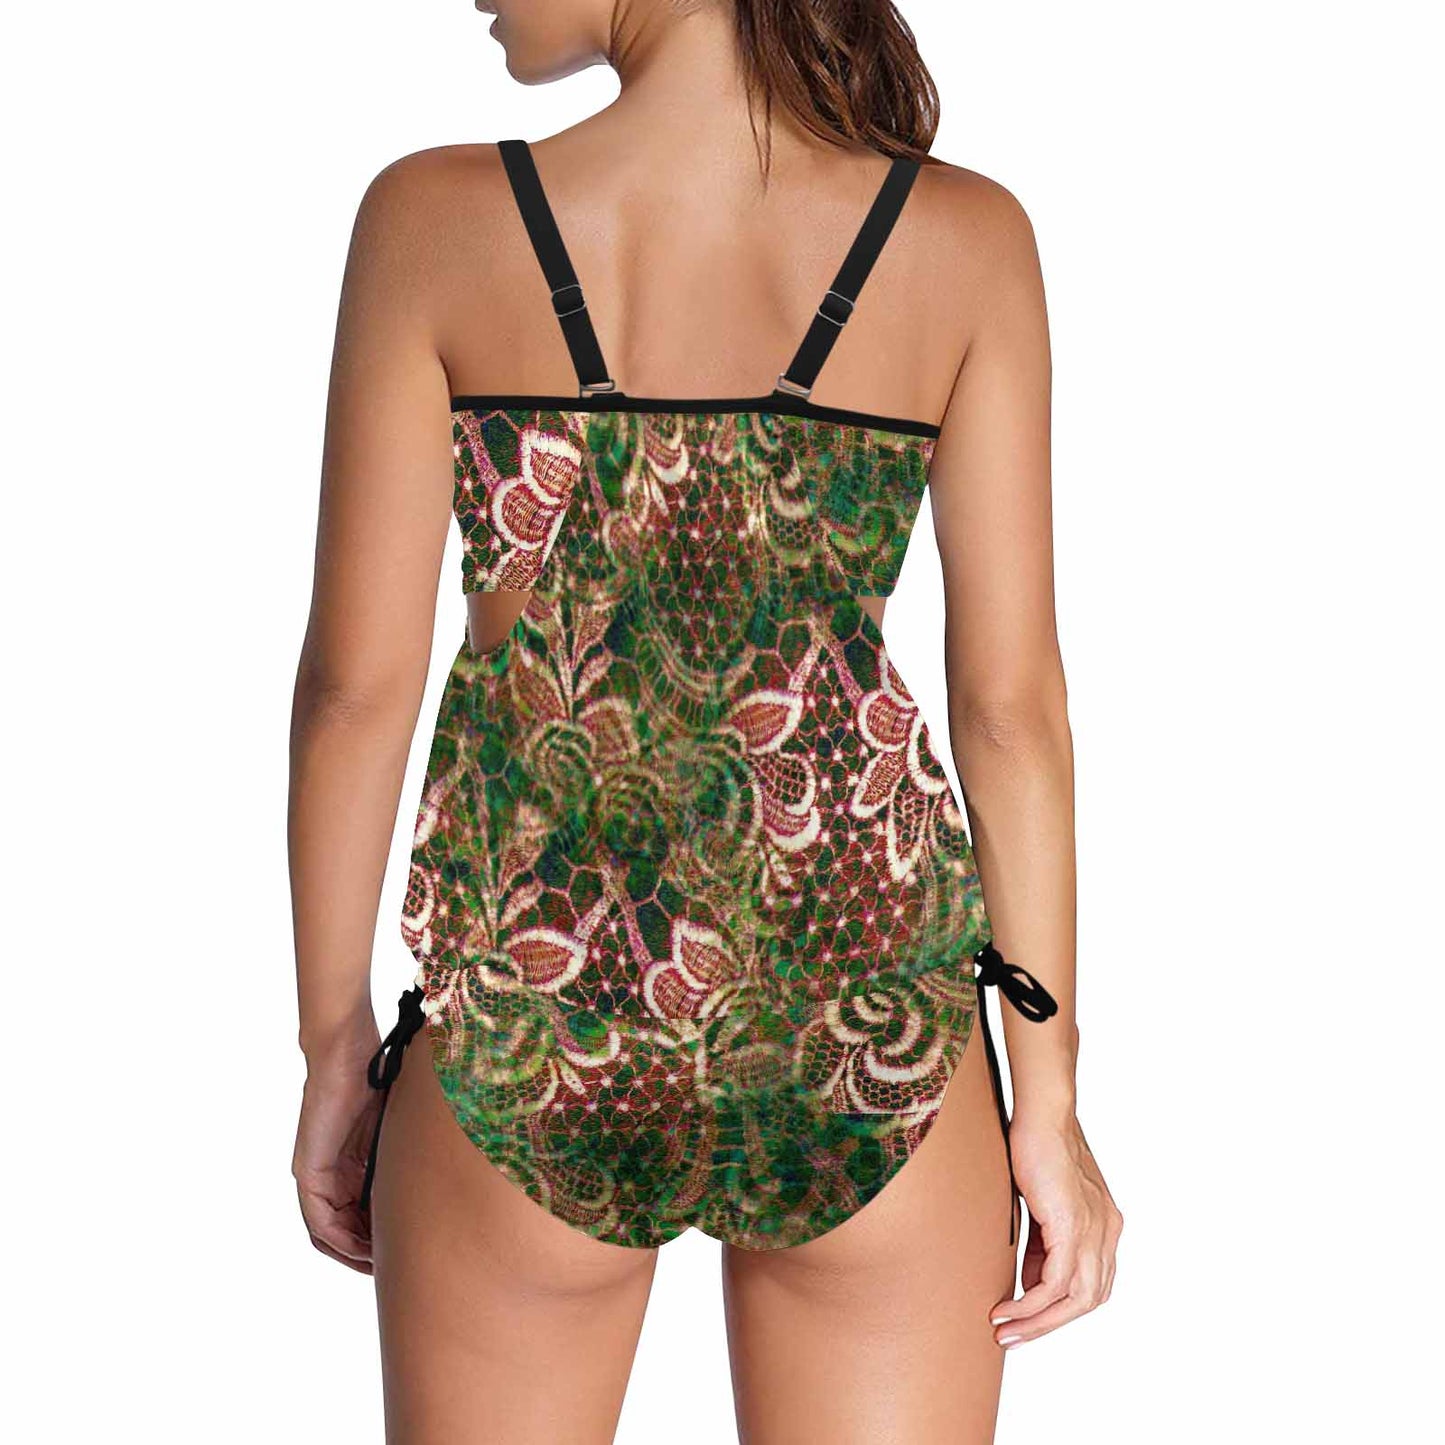 Tankini cover belly swim wear, Printed Victorian lace design 34